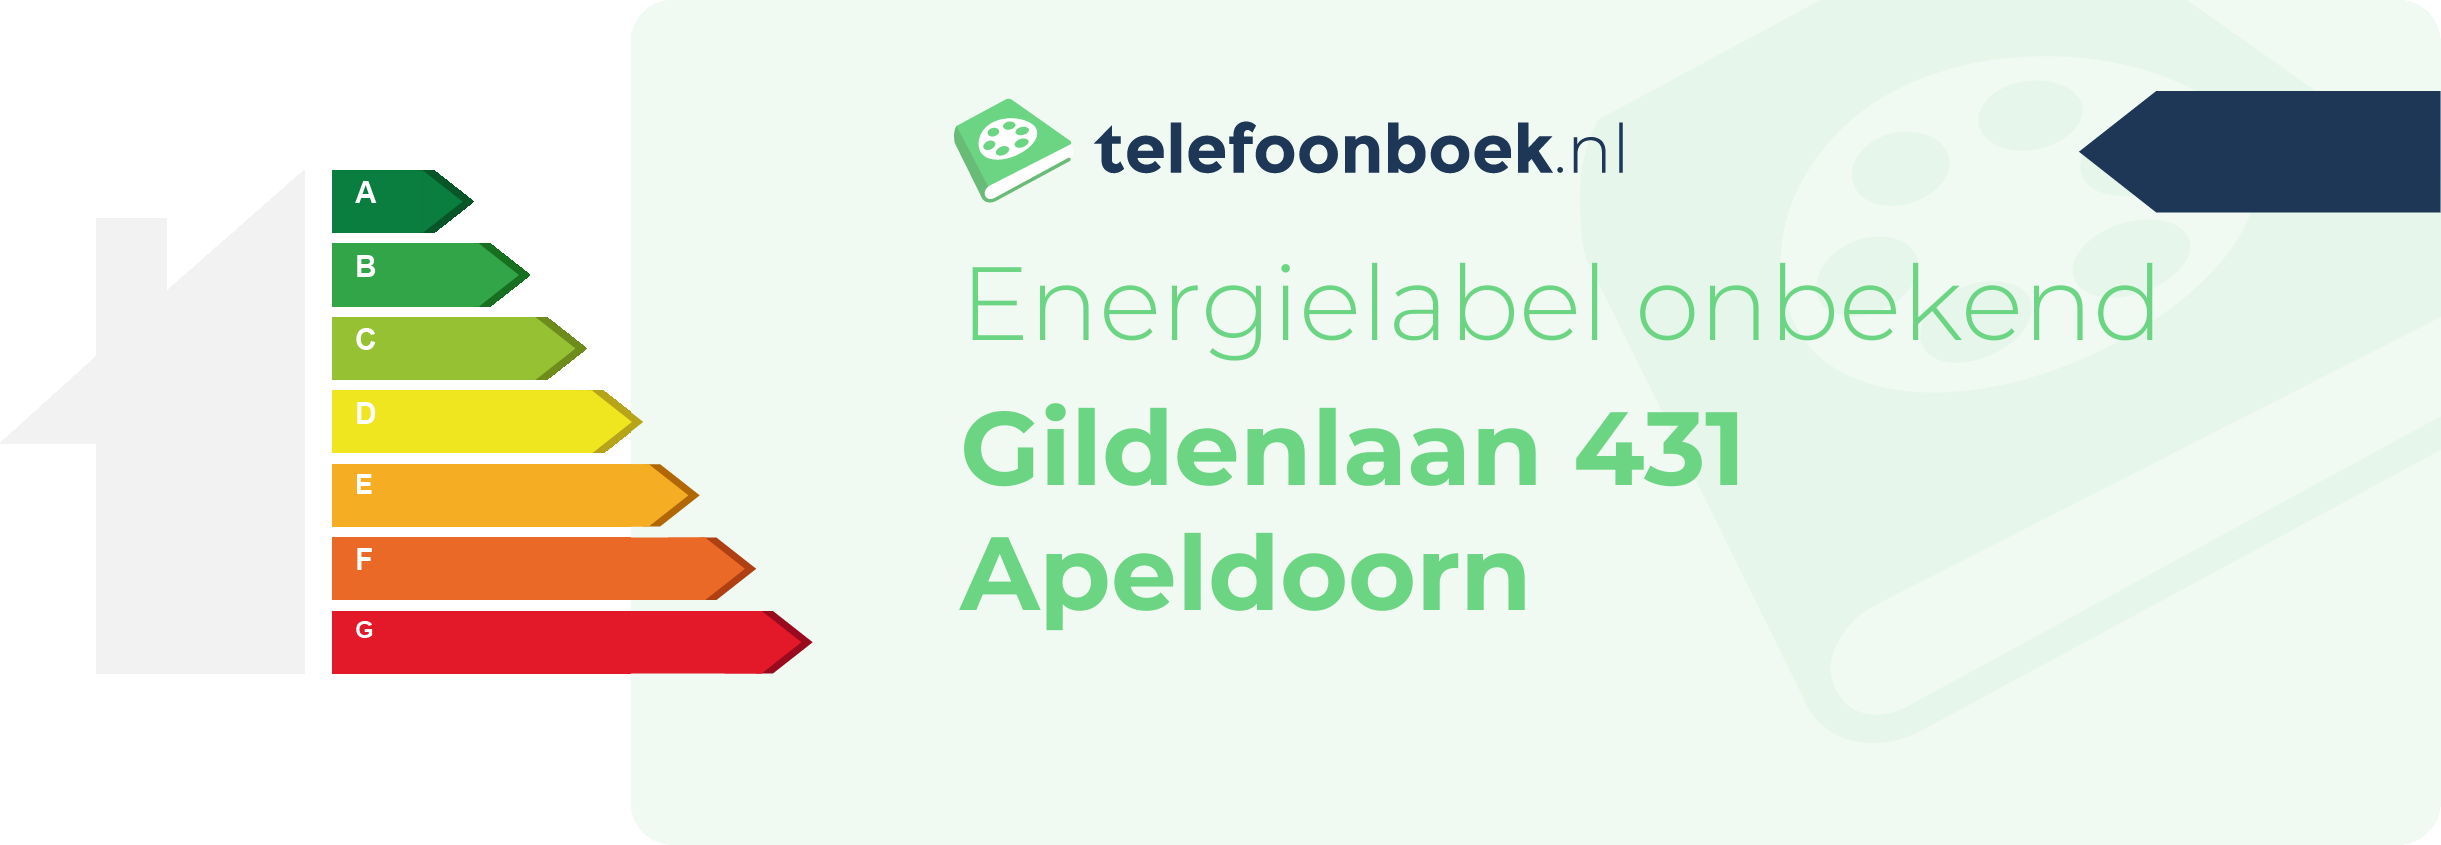 Energielabel Gildenlaan 431 Apeldoorn